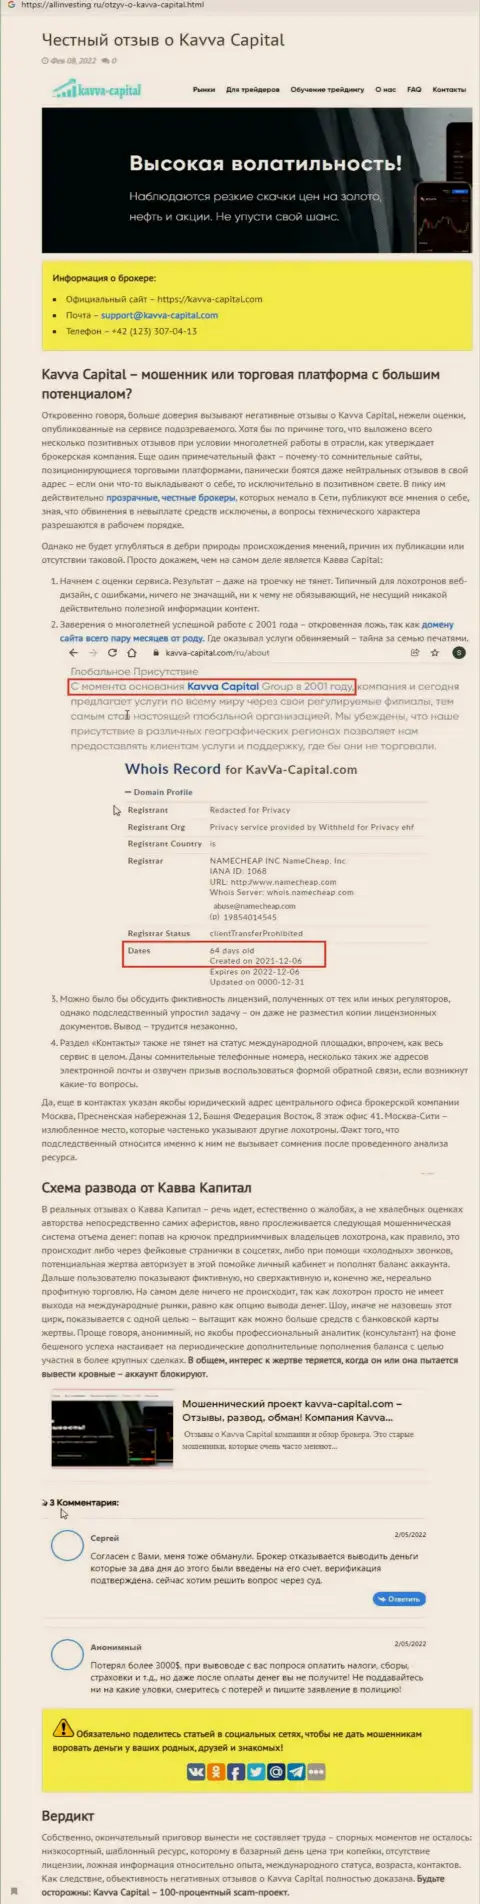 Kavva-Capital Com: обзор противозаконных деяний противозаконно действующей конторы и отзывы, потерявших финансовые средства реальных клиентов